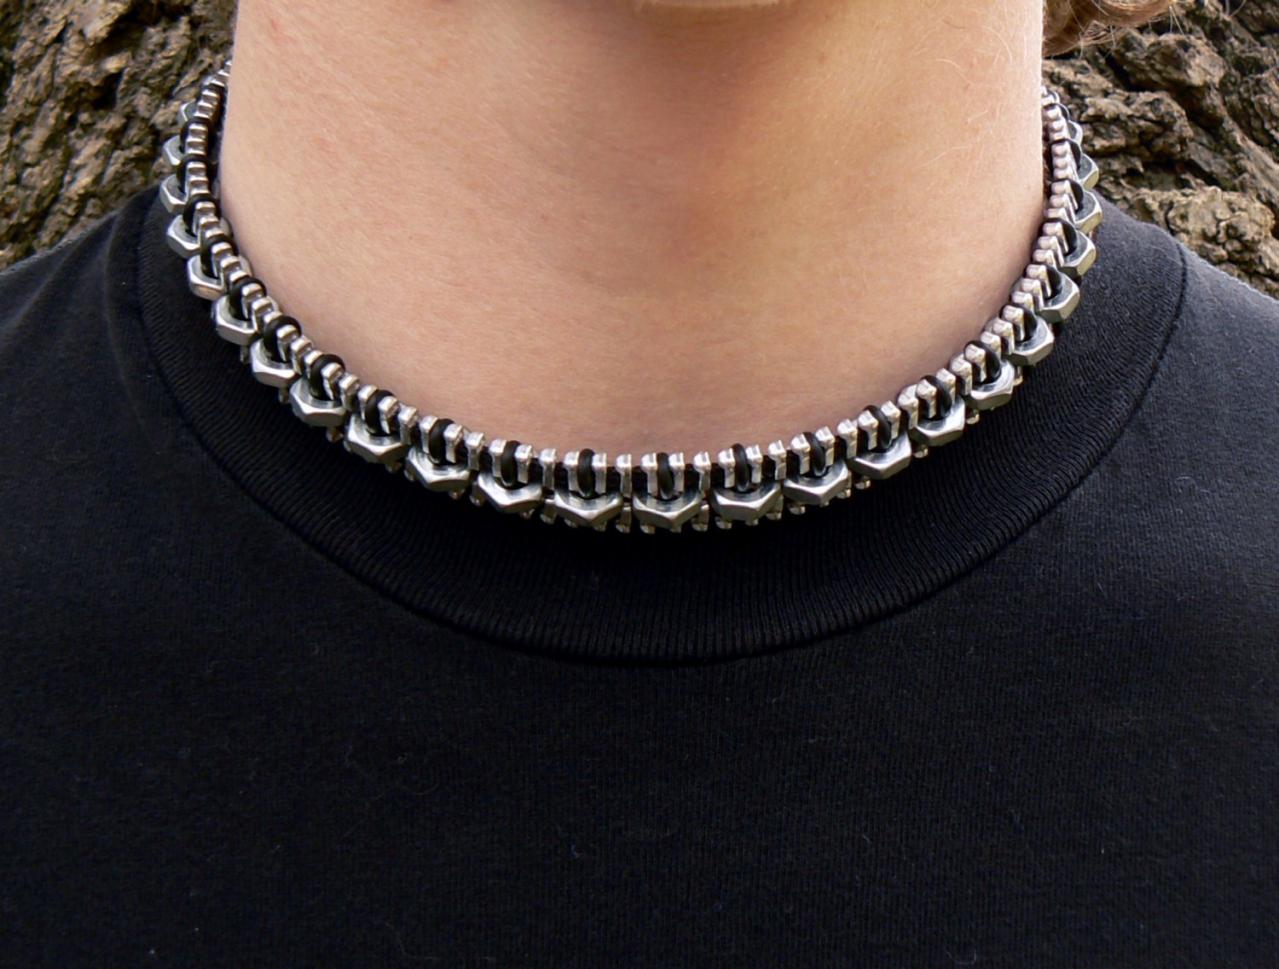 Industrial Choker Necklace - Zipper Choker Necklace - Chain Choker Necklace - Hex Nut Choker Necklace